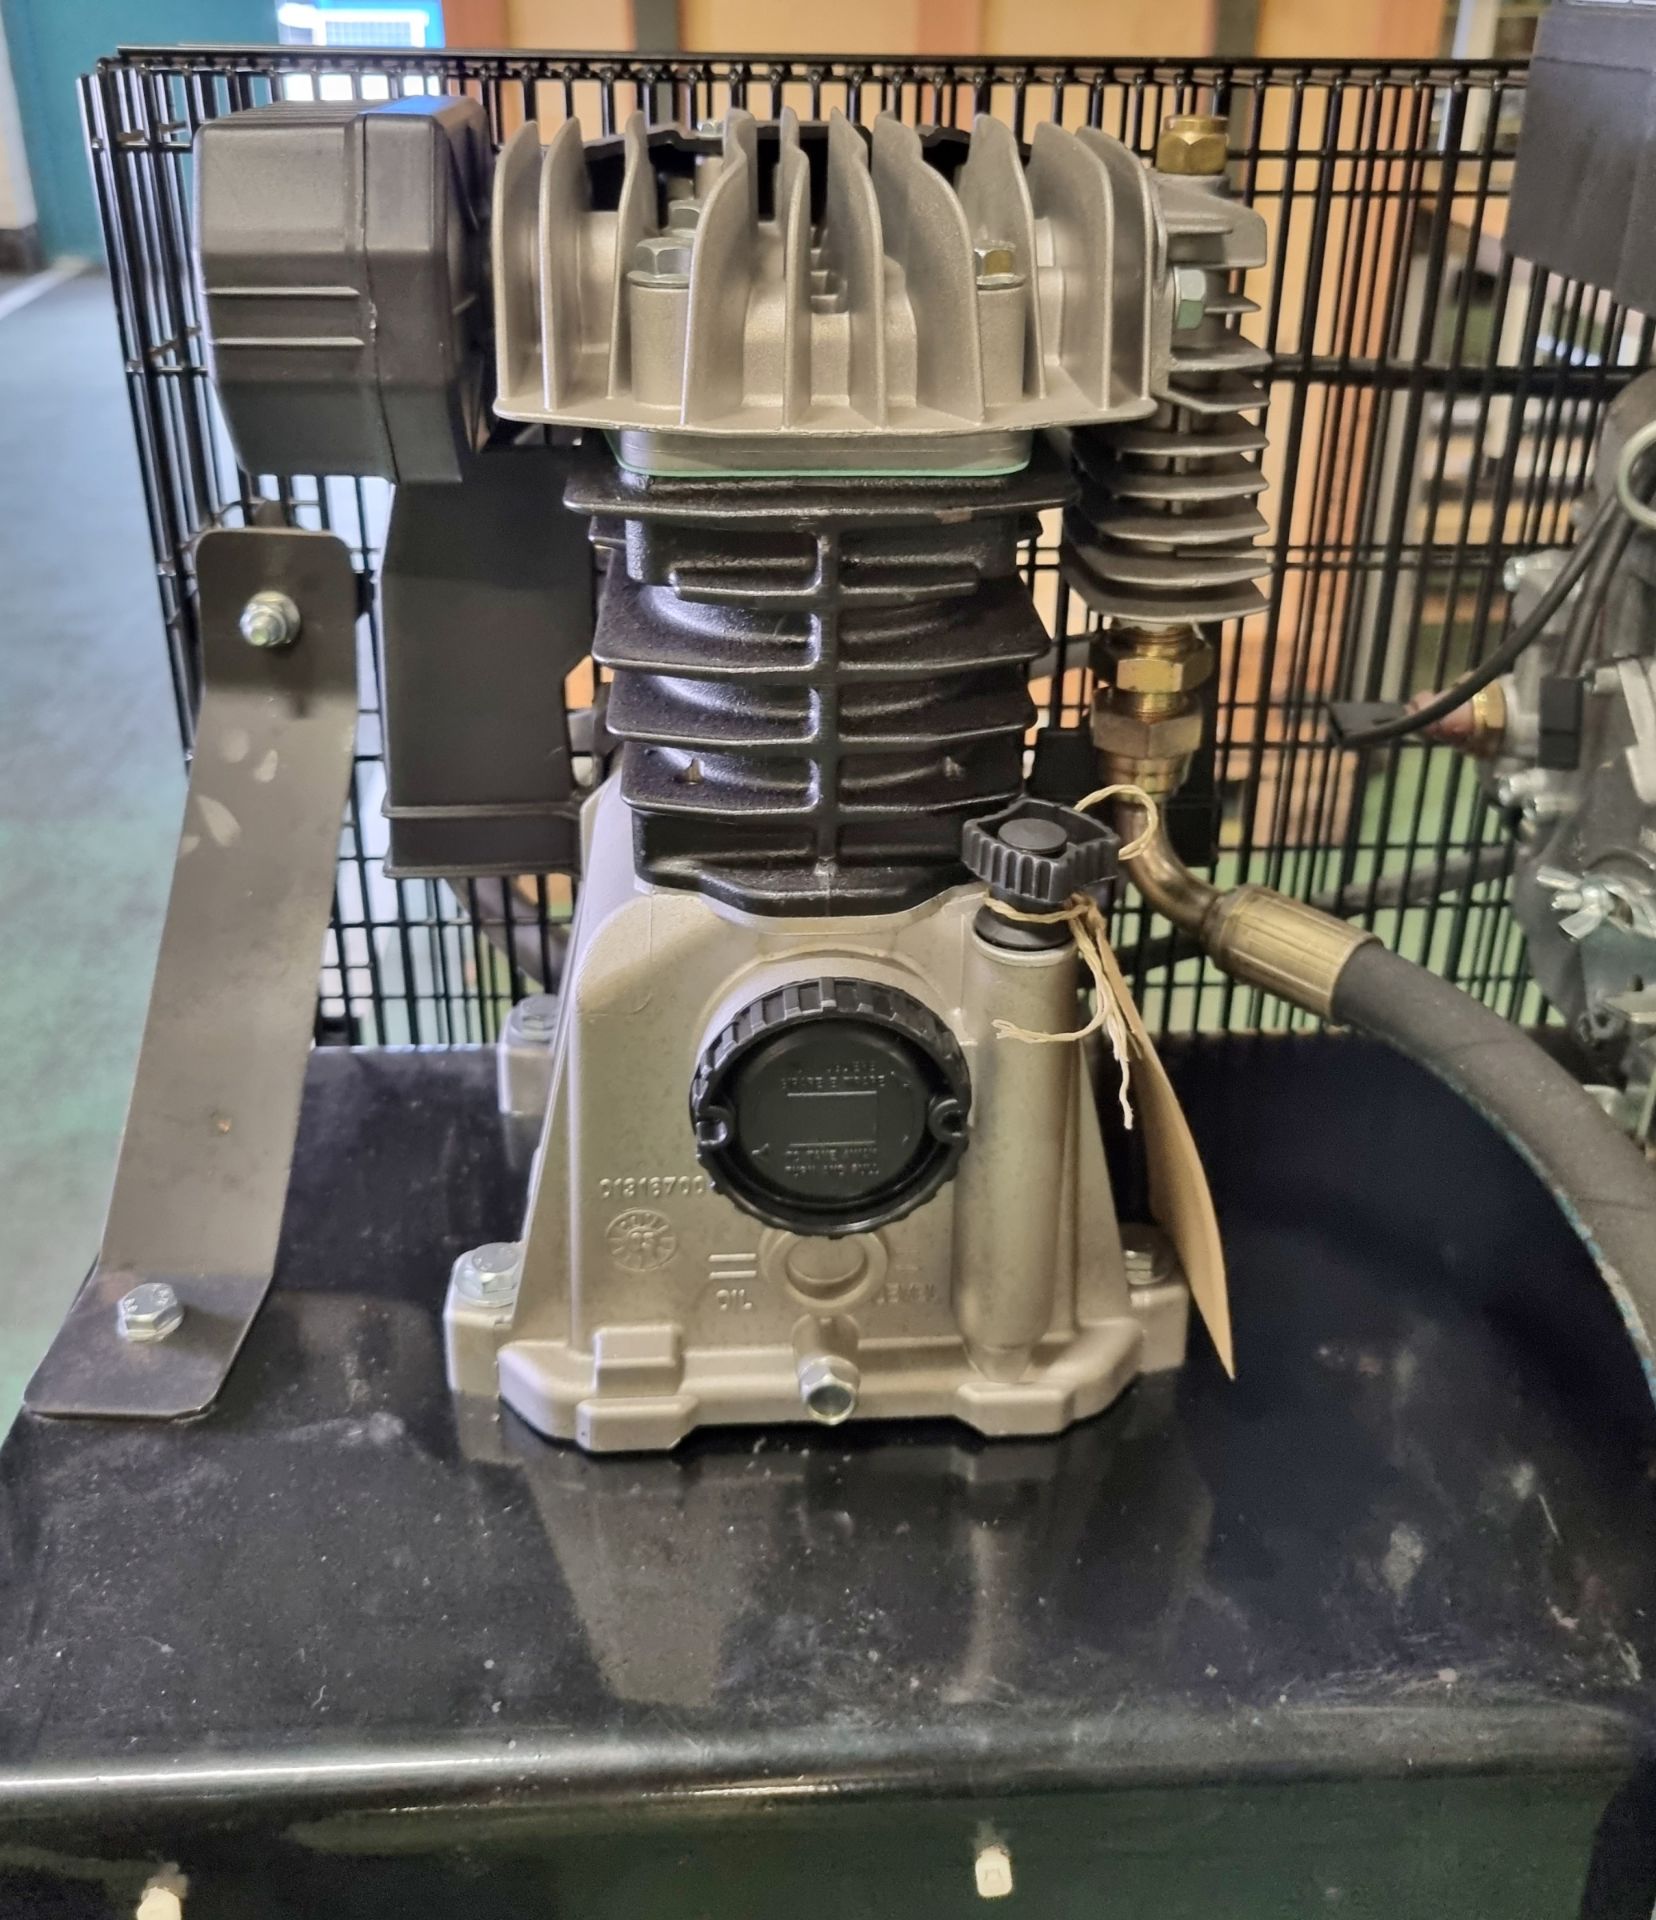 Diesel powered workshop compressor - Lombardini 15 LD 315 diesel engine - Serial No. 5352814 - Image 9 of 15